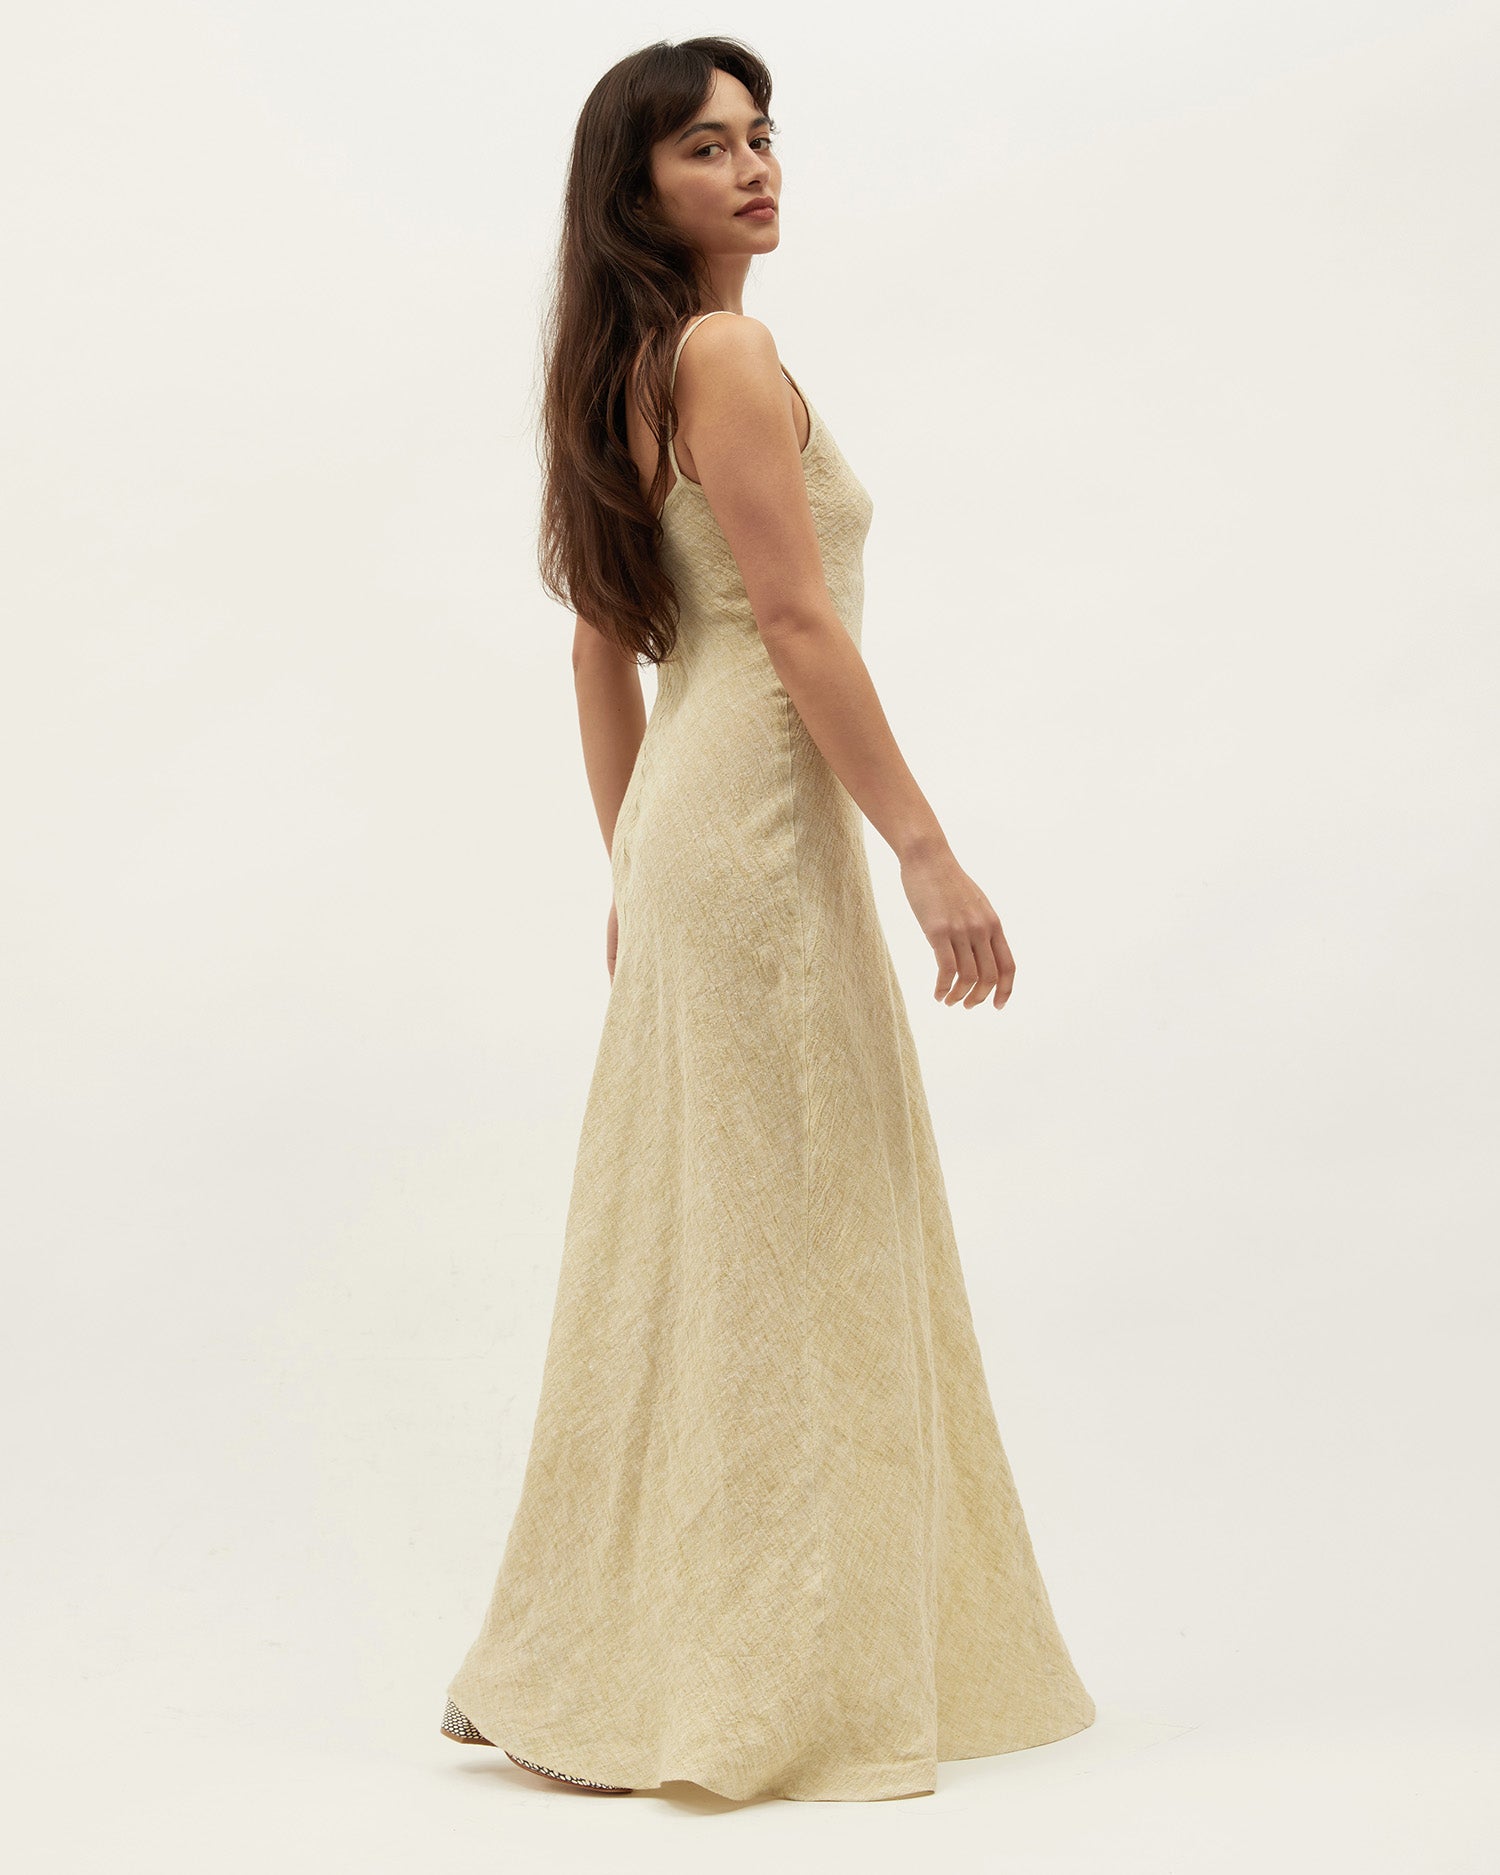 Sloane Dress | Zest $335